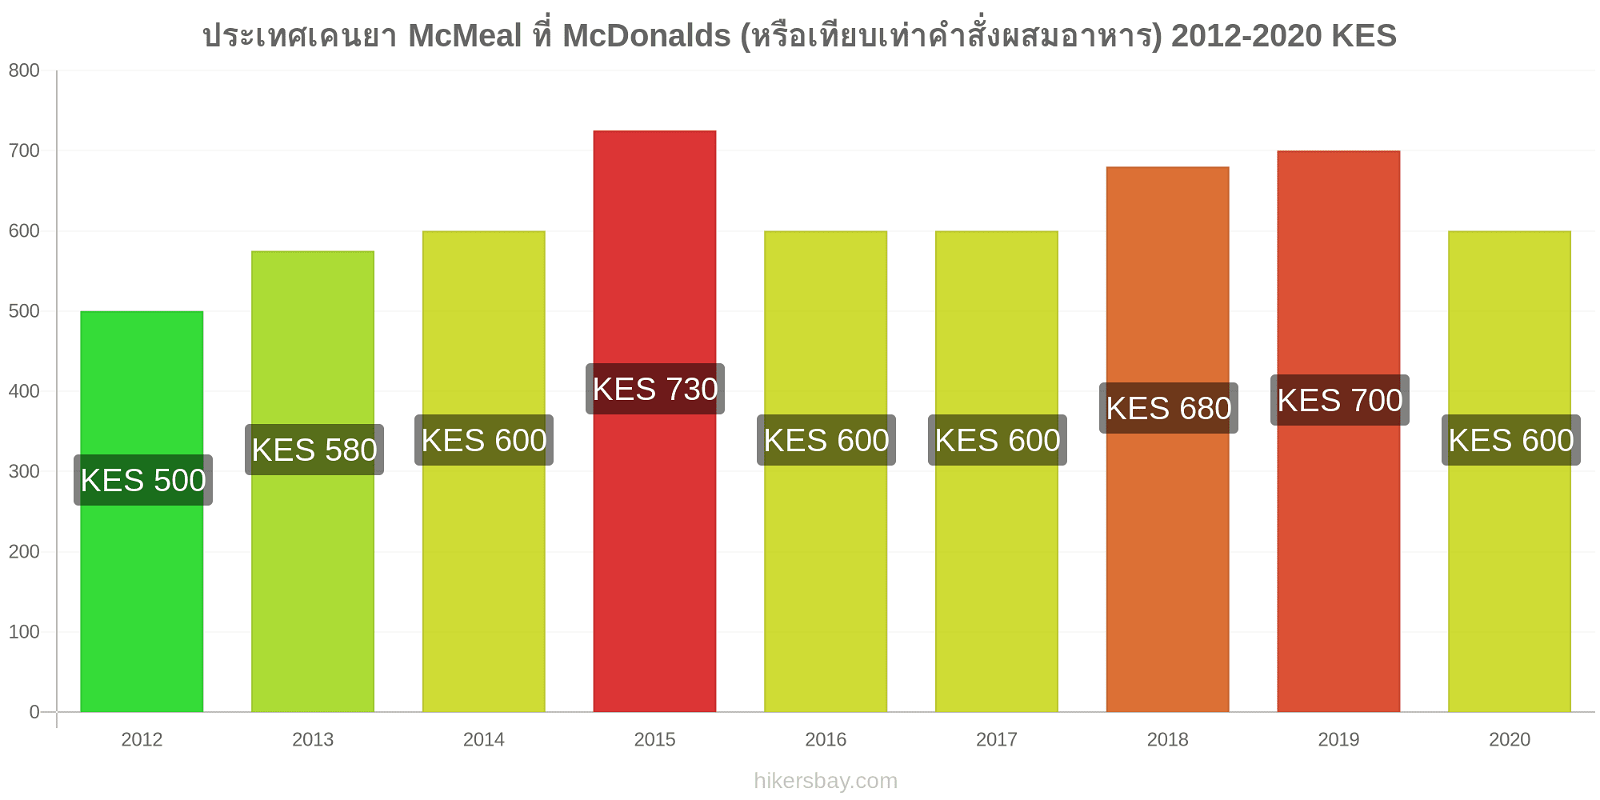 ประเทศเคนยา การเปลี่ยนแปลงราคา McMeal ที่ McDonalds (หรือเทียบเท่าคำสั่งผสมอาหาร) hikersbay.com